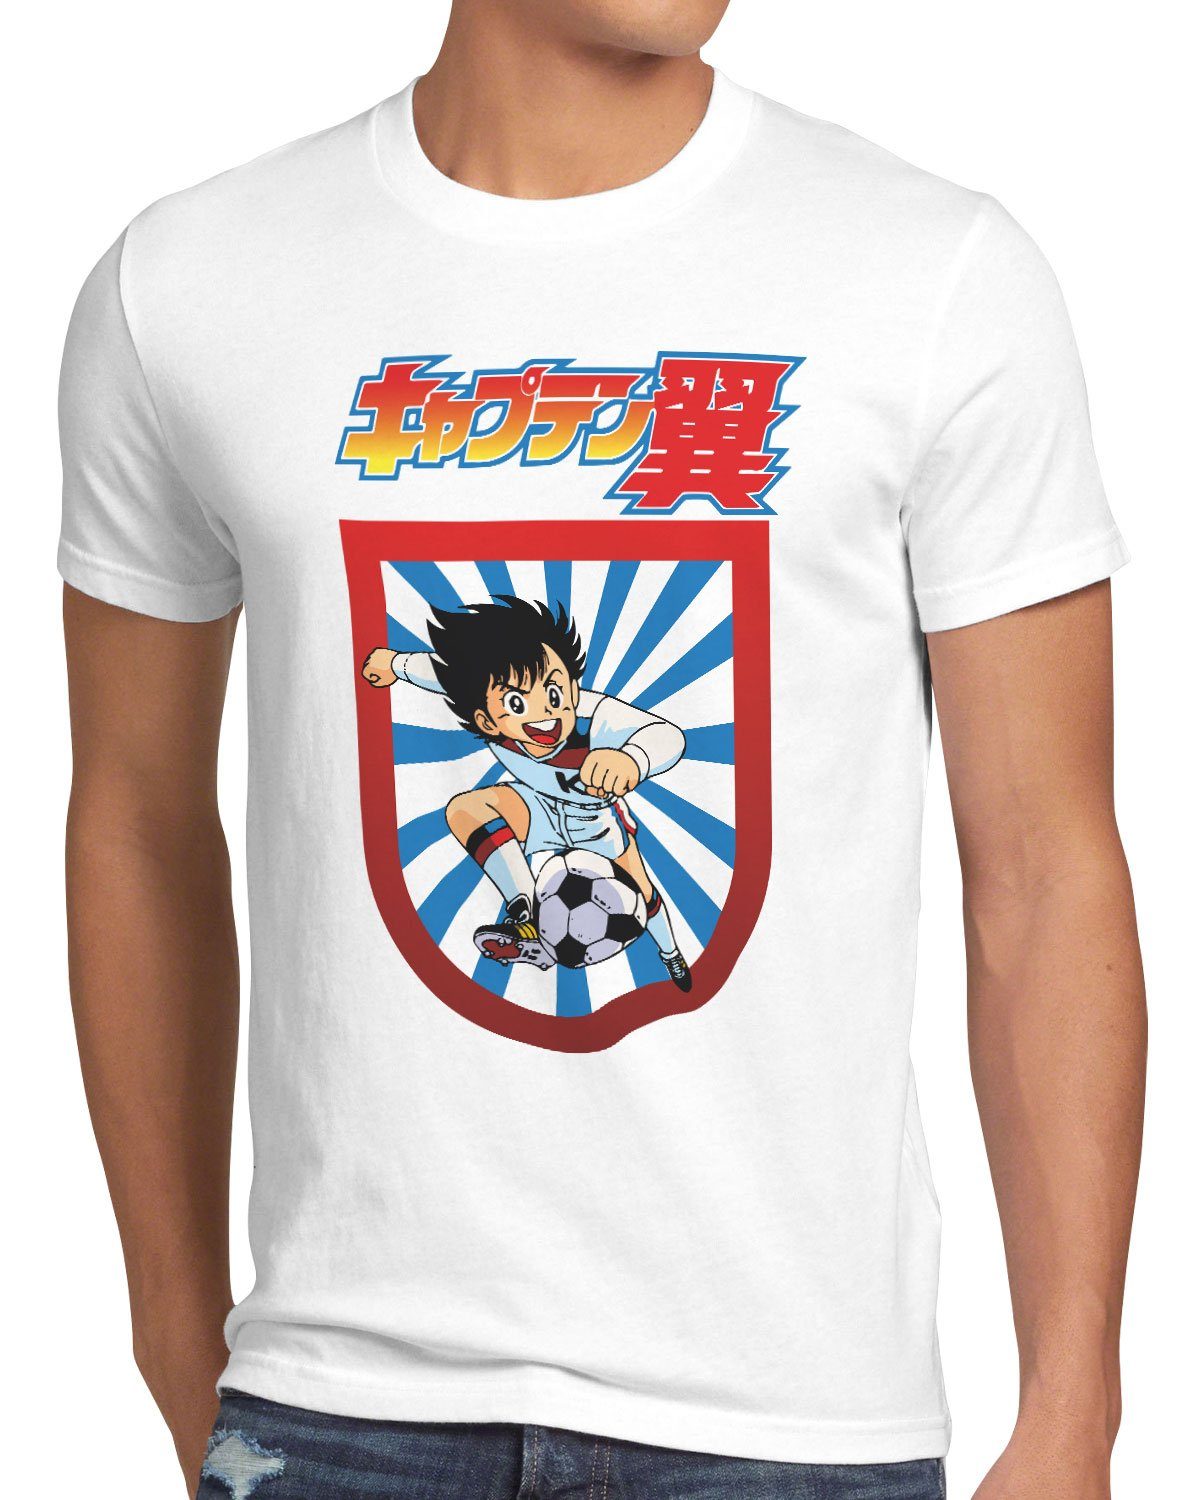 T-Shirt wm style3 em Herren weiß fußballstars Tsubasa Print-Shirt tollen